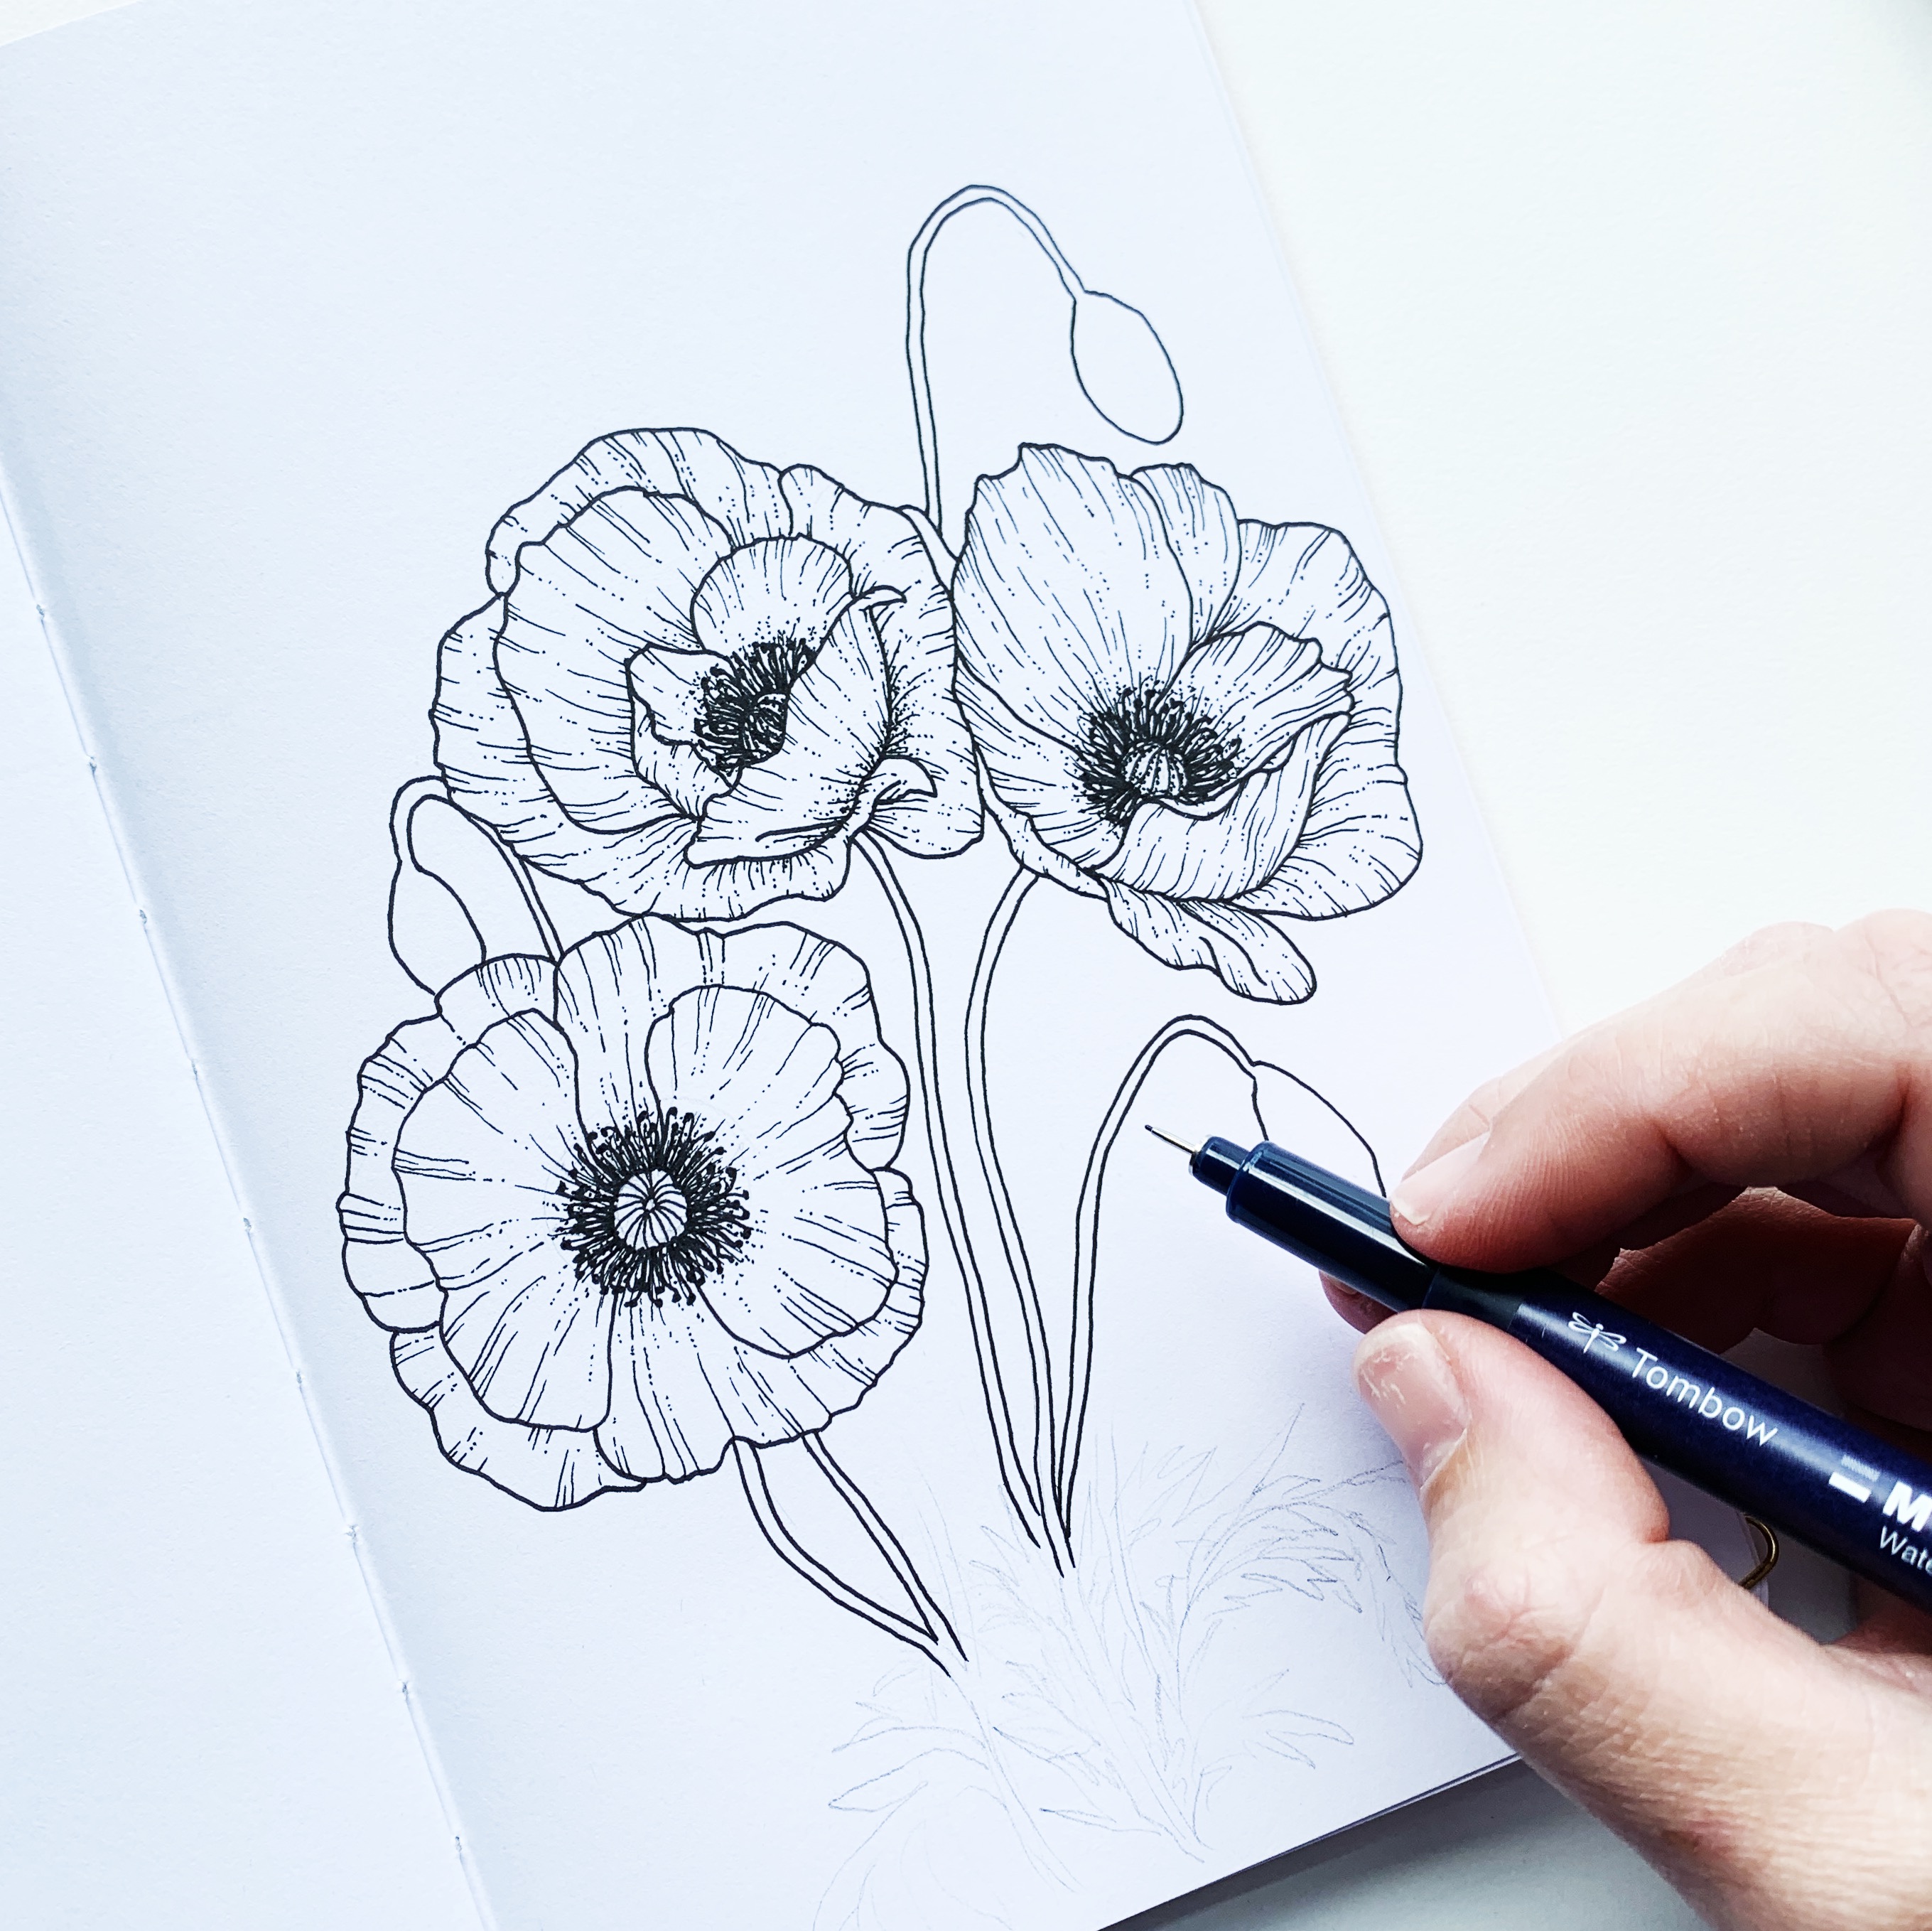 how to draw a poppy